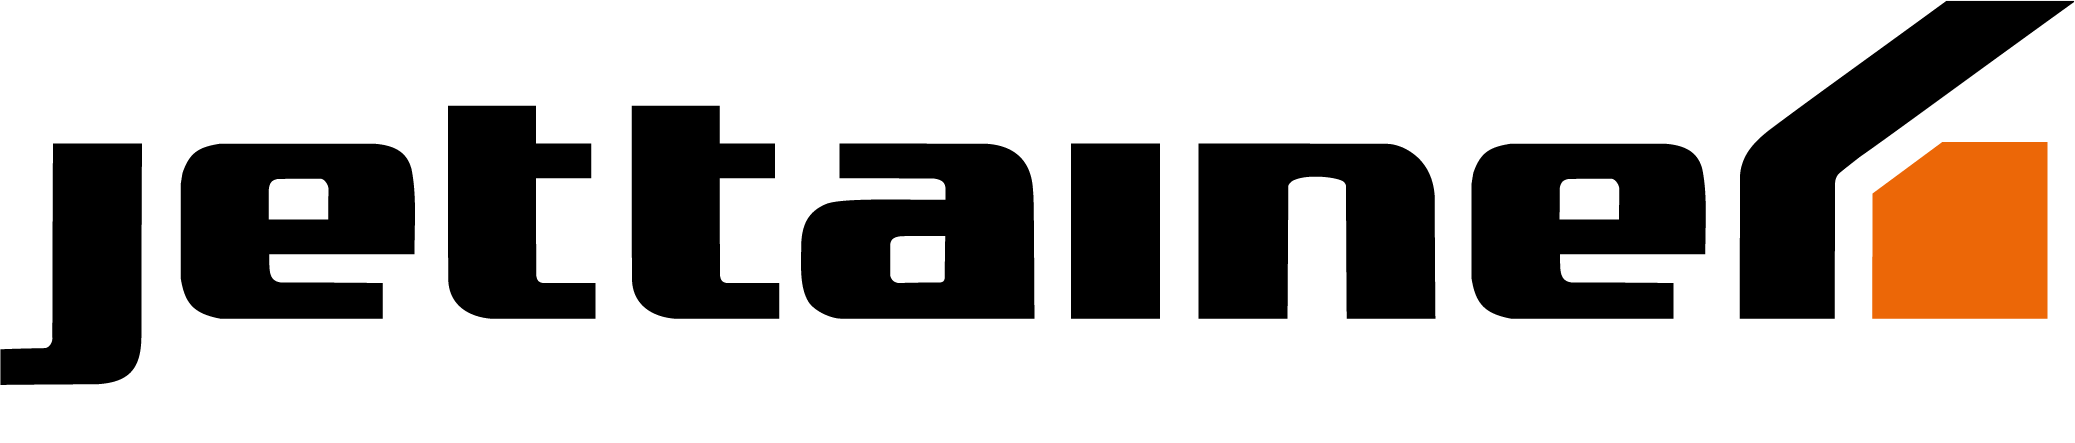 Jettainer Logo